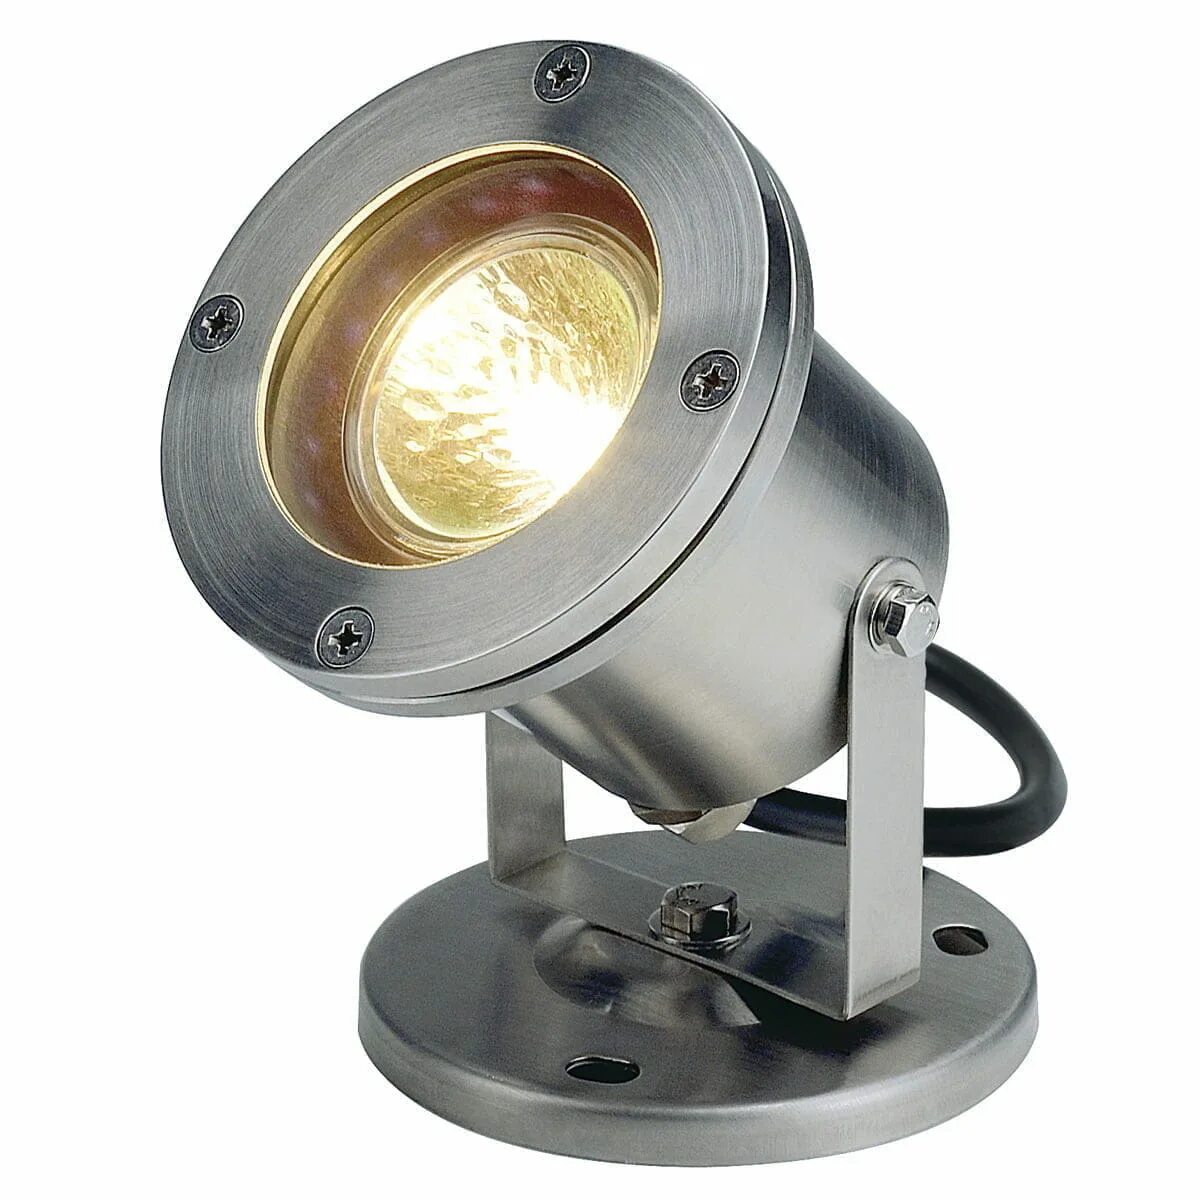 Купить лампу прожектор. Прожектор галогенный SLV Nautilus 35w 229090. Прожектор SLV Nautilus 1001965. Прожектор SLV 1001633. Прожектор SLV 1001635.